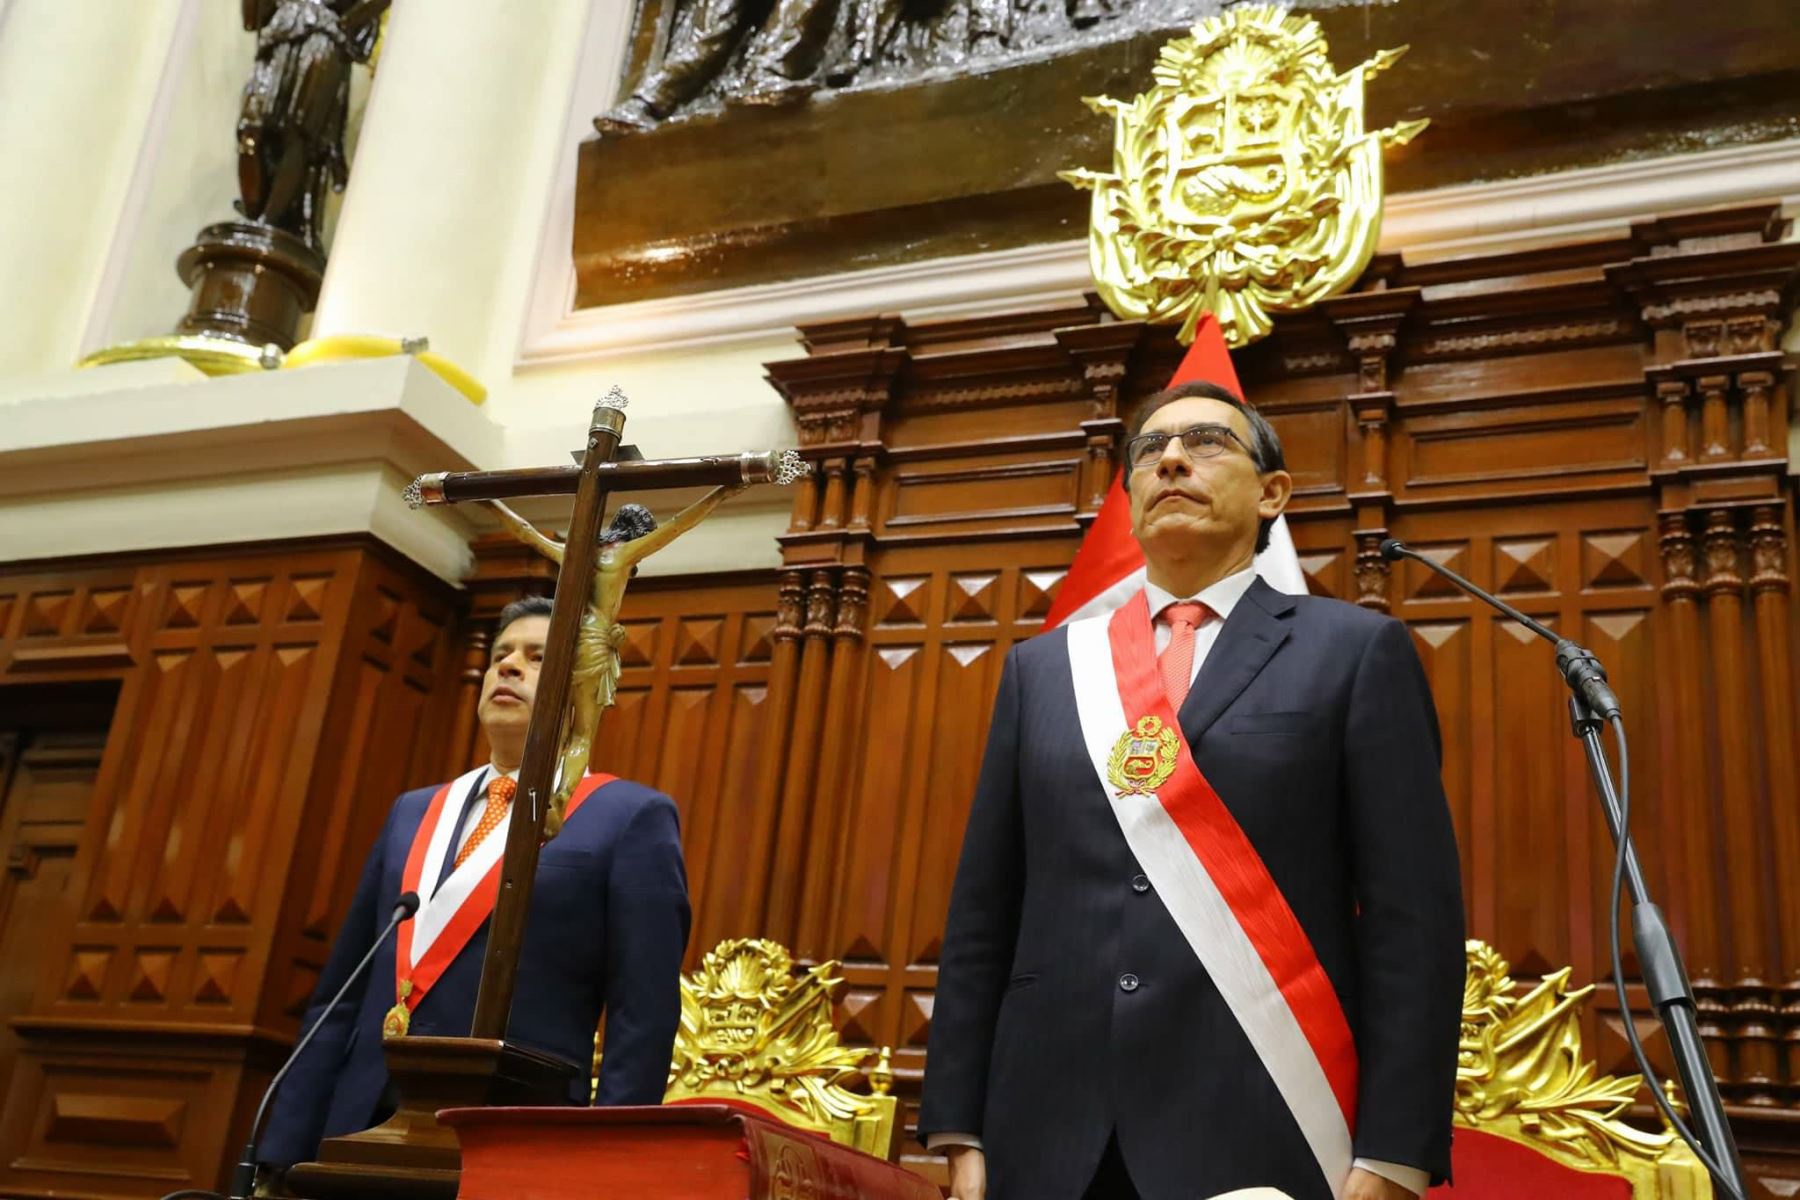 Martín Vizcarra Cornejo , Presidente de la Republica en el periodo 23 de marzo de 2018-10 de noviembre de 2020 